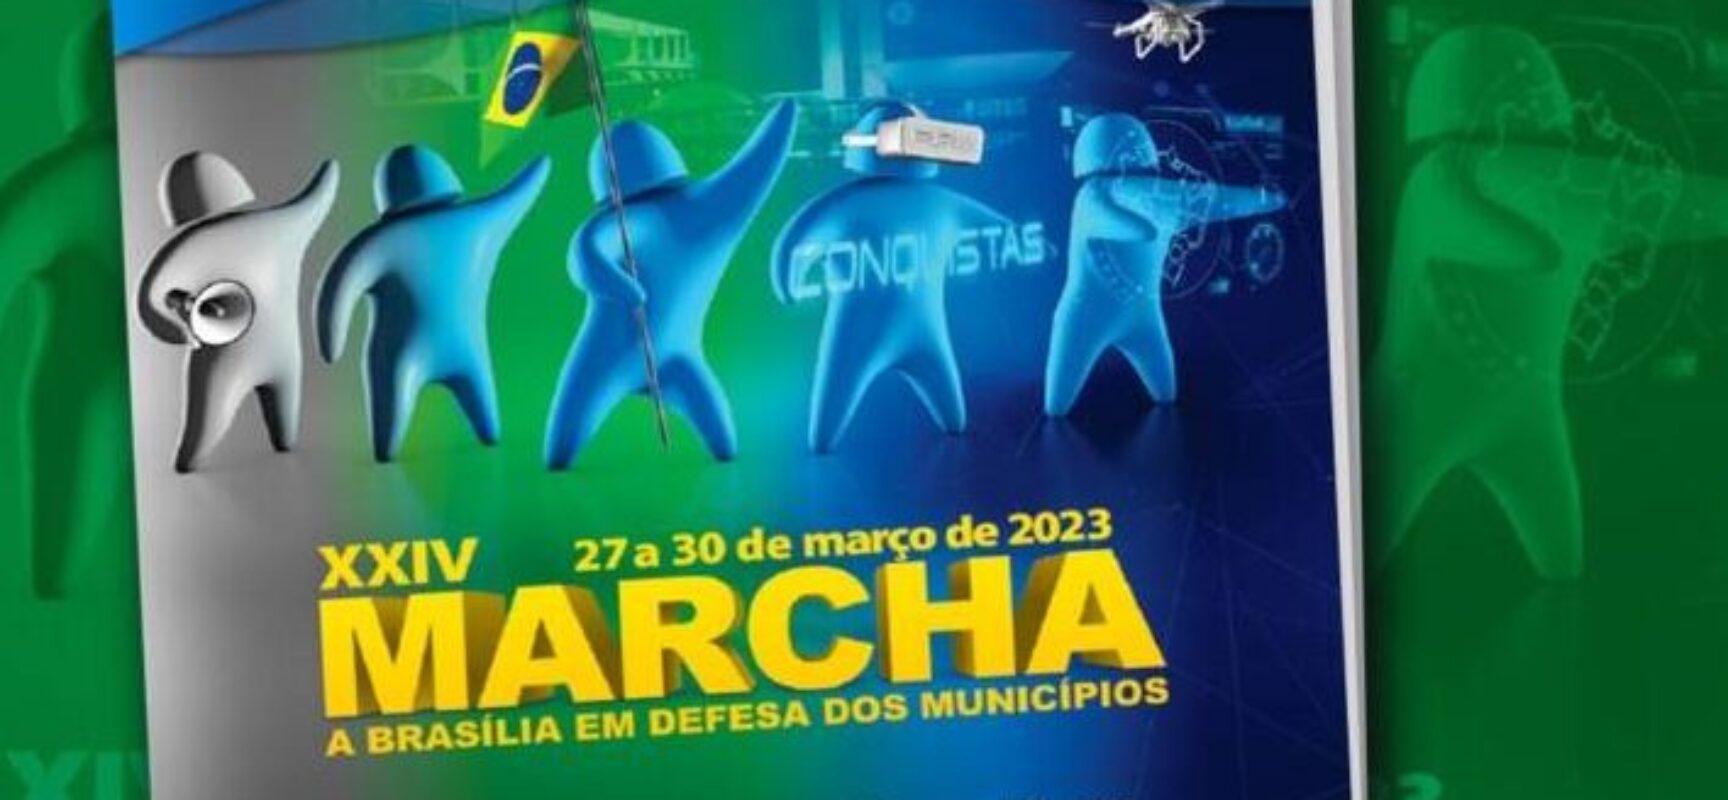 XXIV Marcha a Brasília em Defesa dos Municípios acontece nos dias 27 a 30 de março, em Brasília